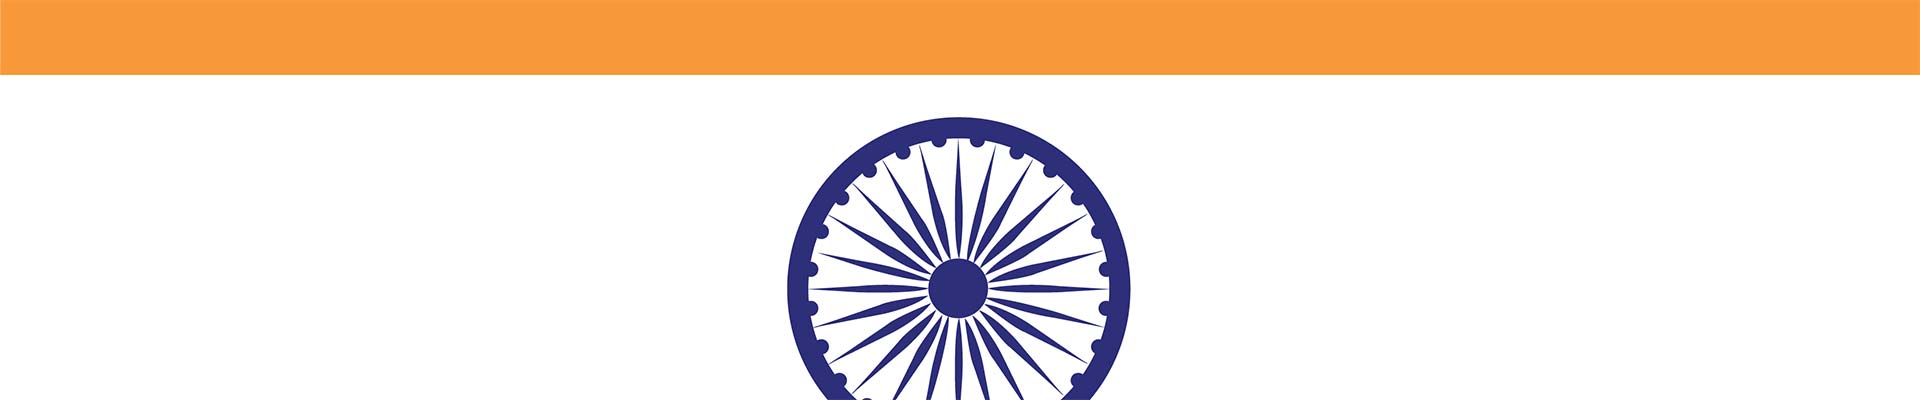 Un segmento de la bandera india